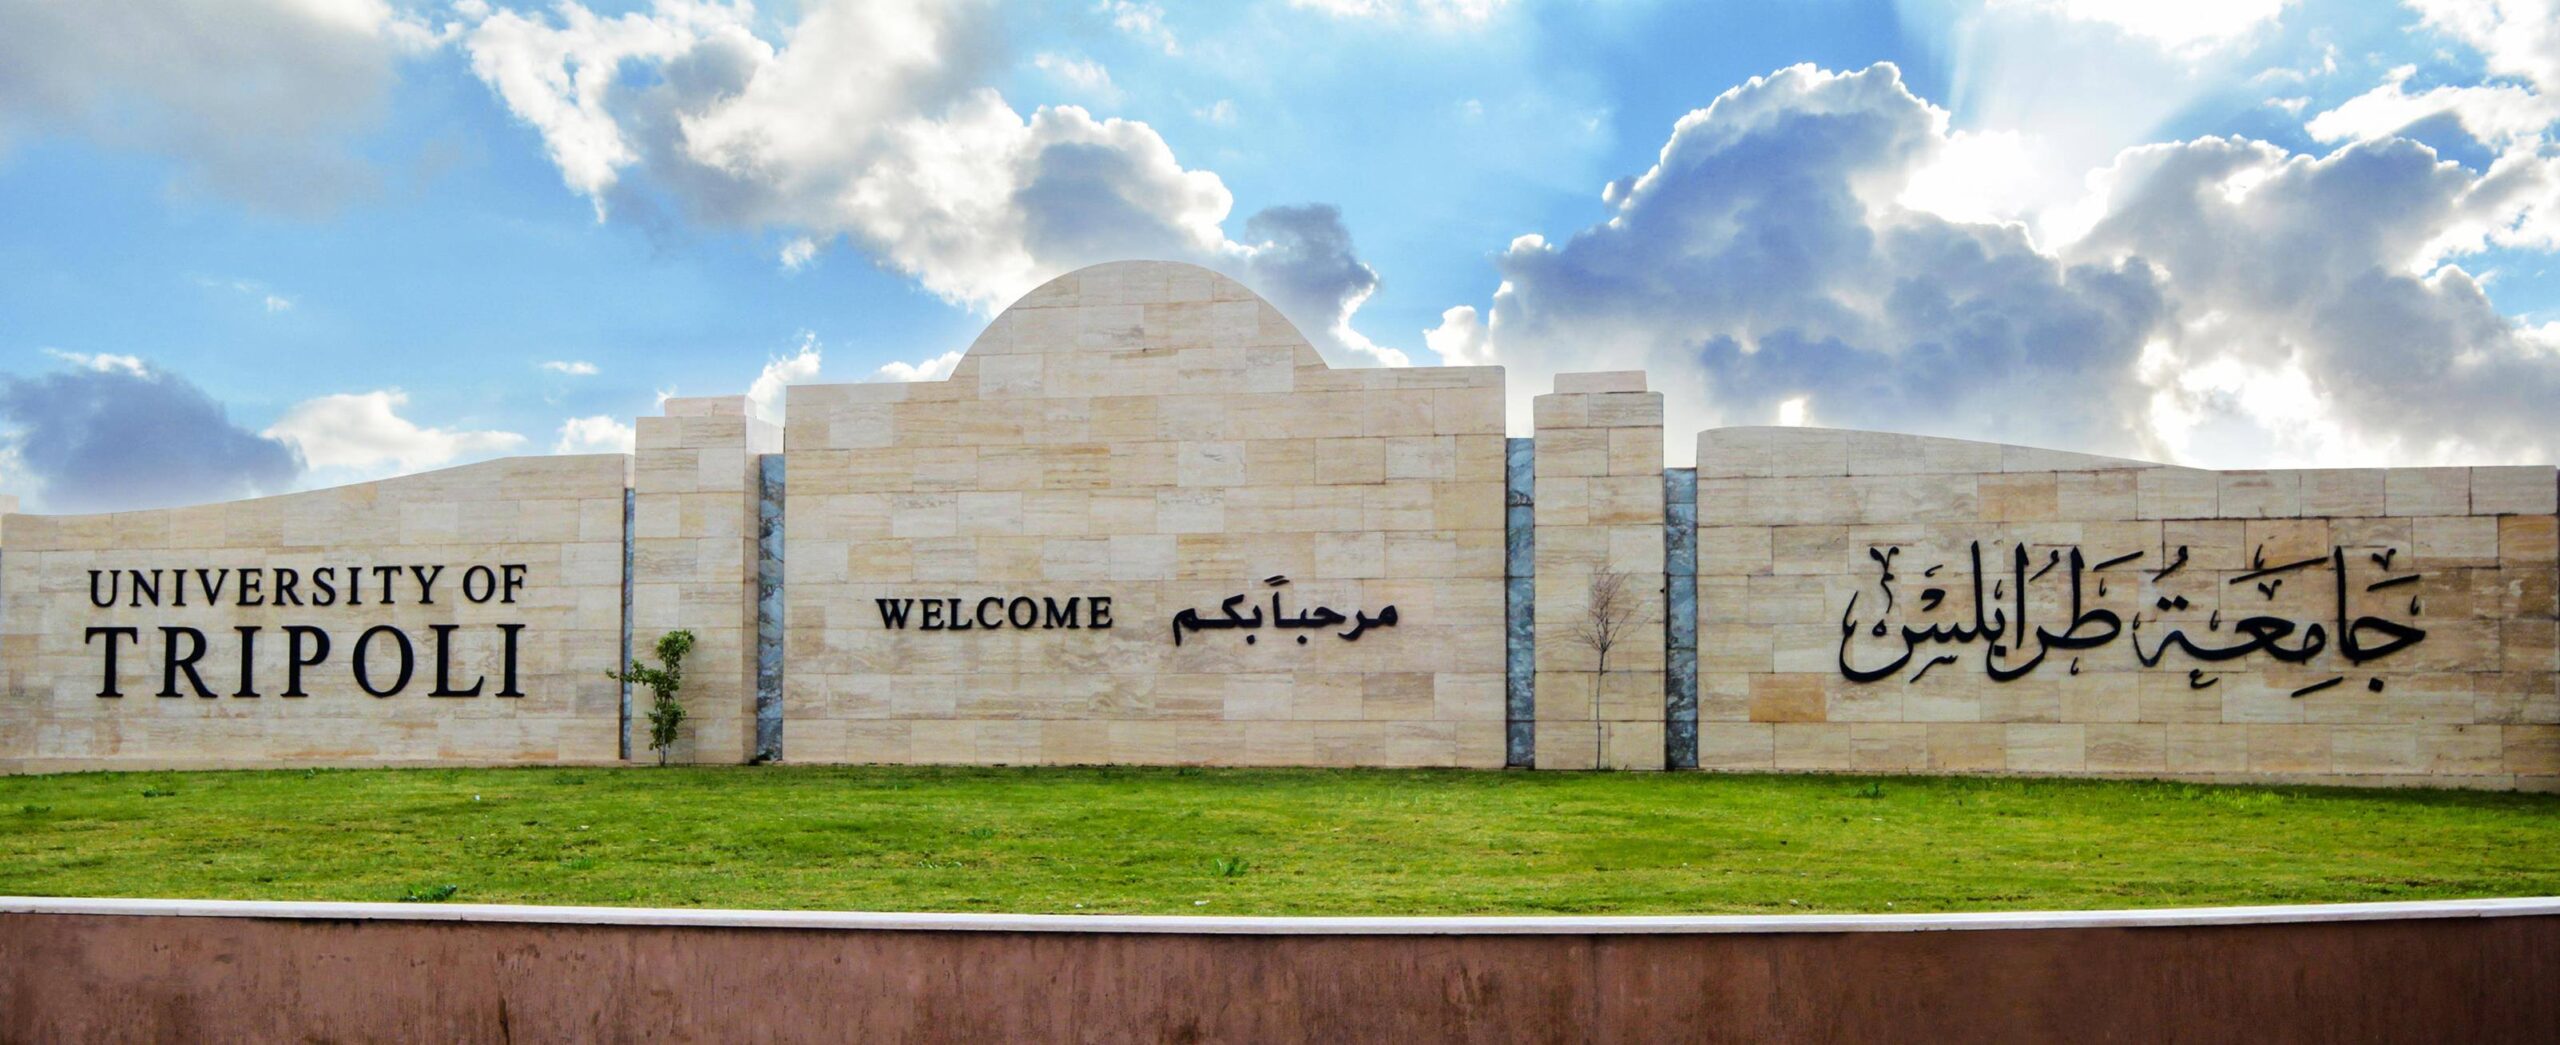 جامعة طرابلس تعلن الاستمرار في تعليق الدراسة إلى حين التنسيق مع الداخلية بشأن الوضع الأمني